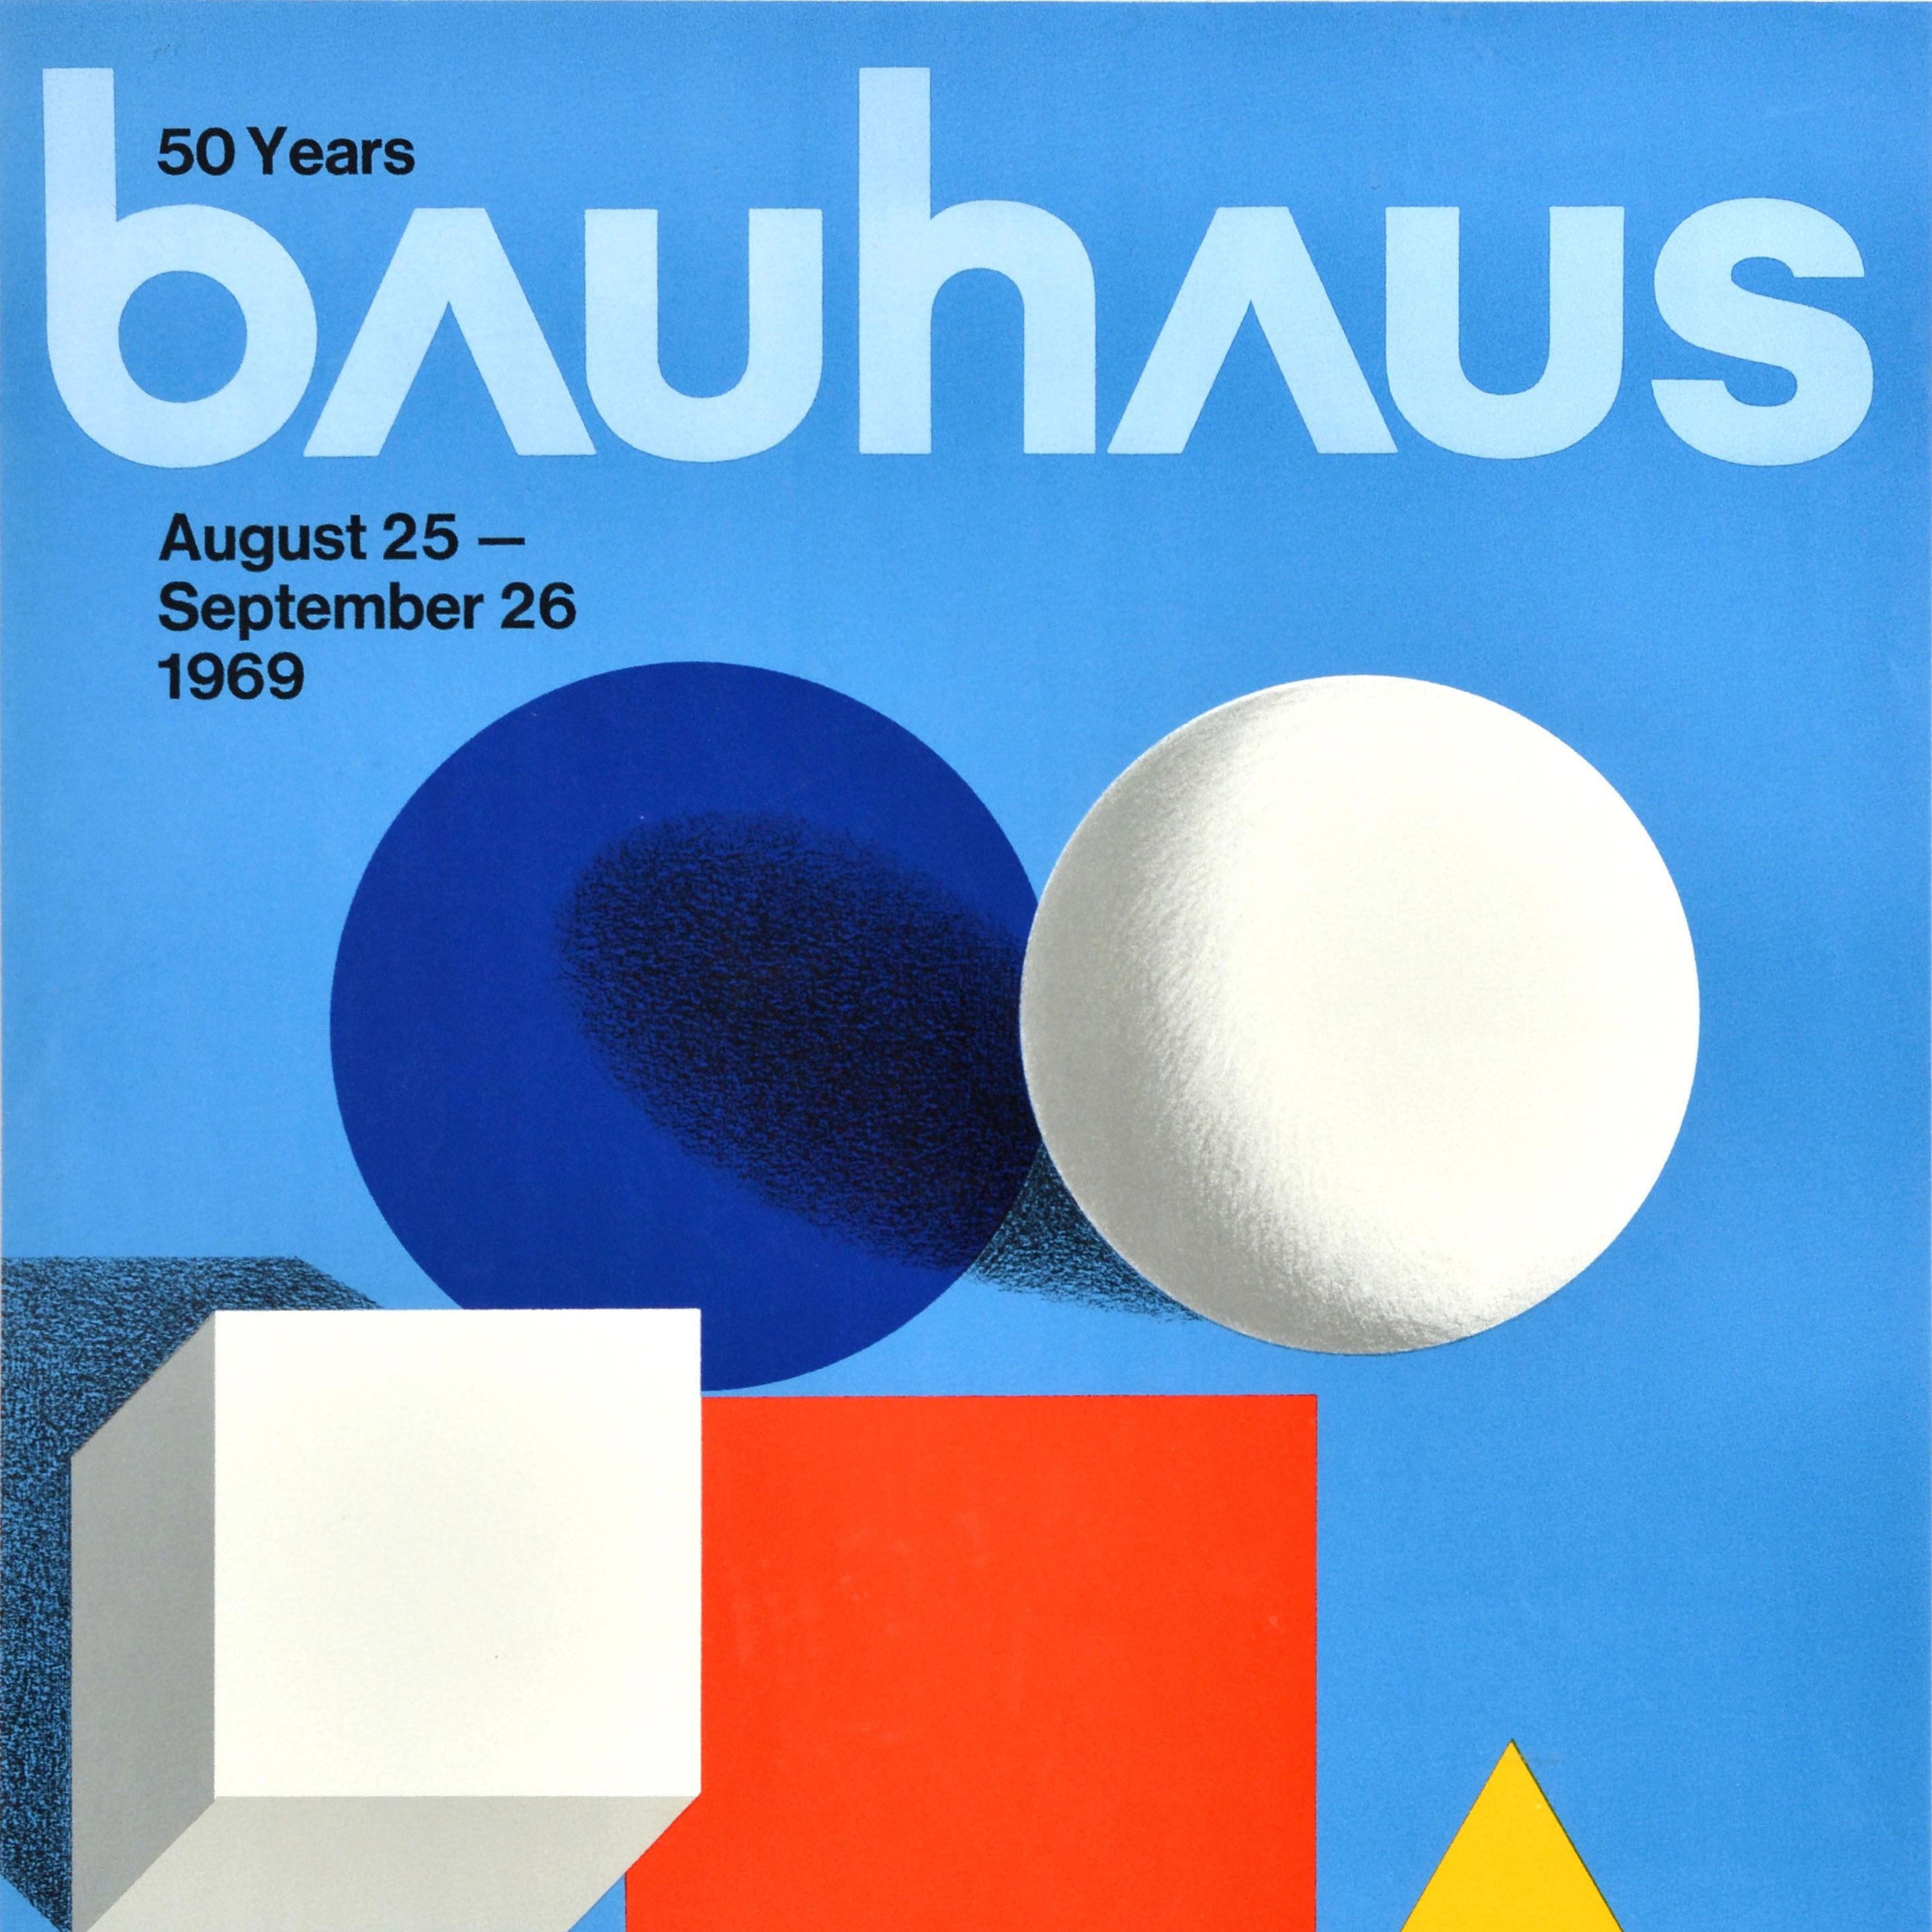 Original-Ausstellungsplakat für 50 Jahre Bauhaus vom 25. August bis 26. September 1969 in der S.R. Crown Hall Illinois Institute of Technology Chicago (IIT Illinois Tech; gegründet 1890) mit einer minimalistischen Komposition, die einen blauen Kreis